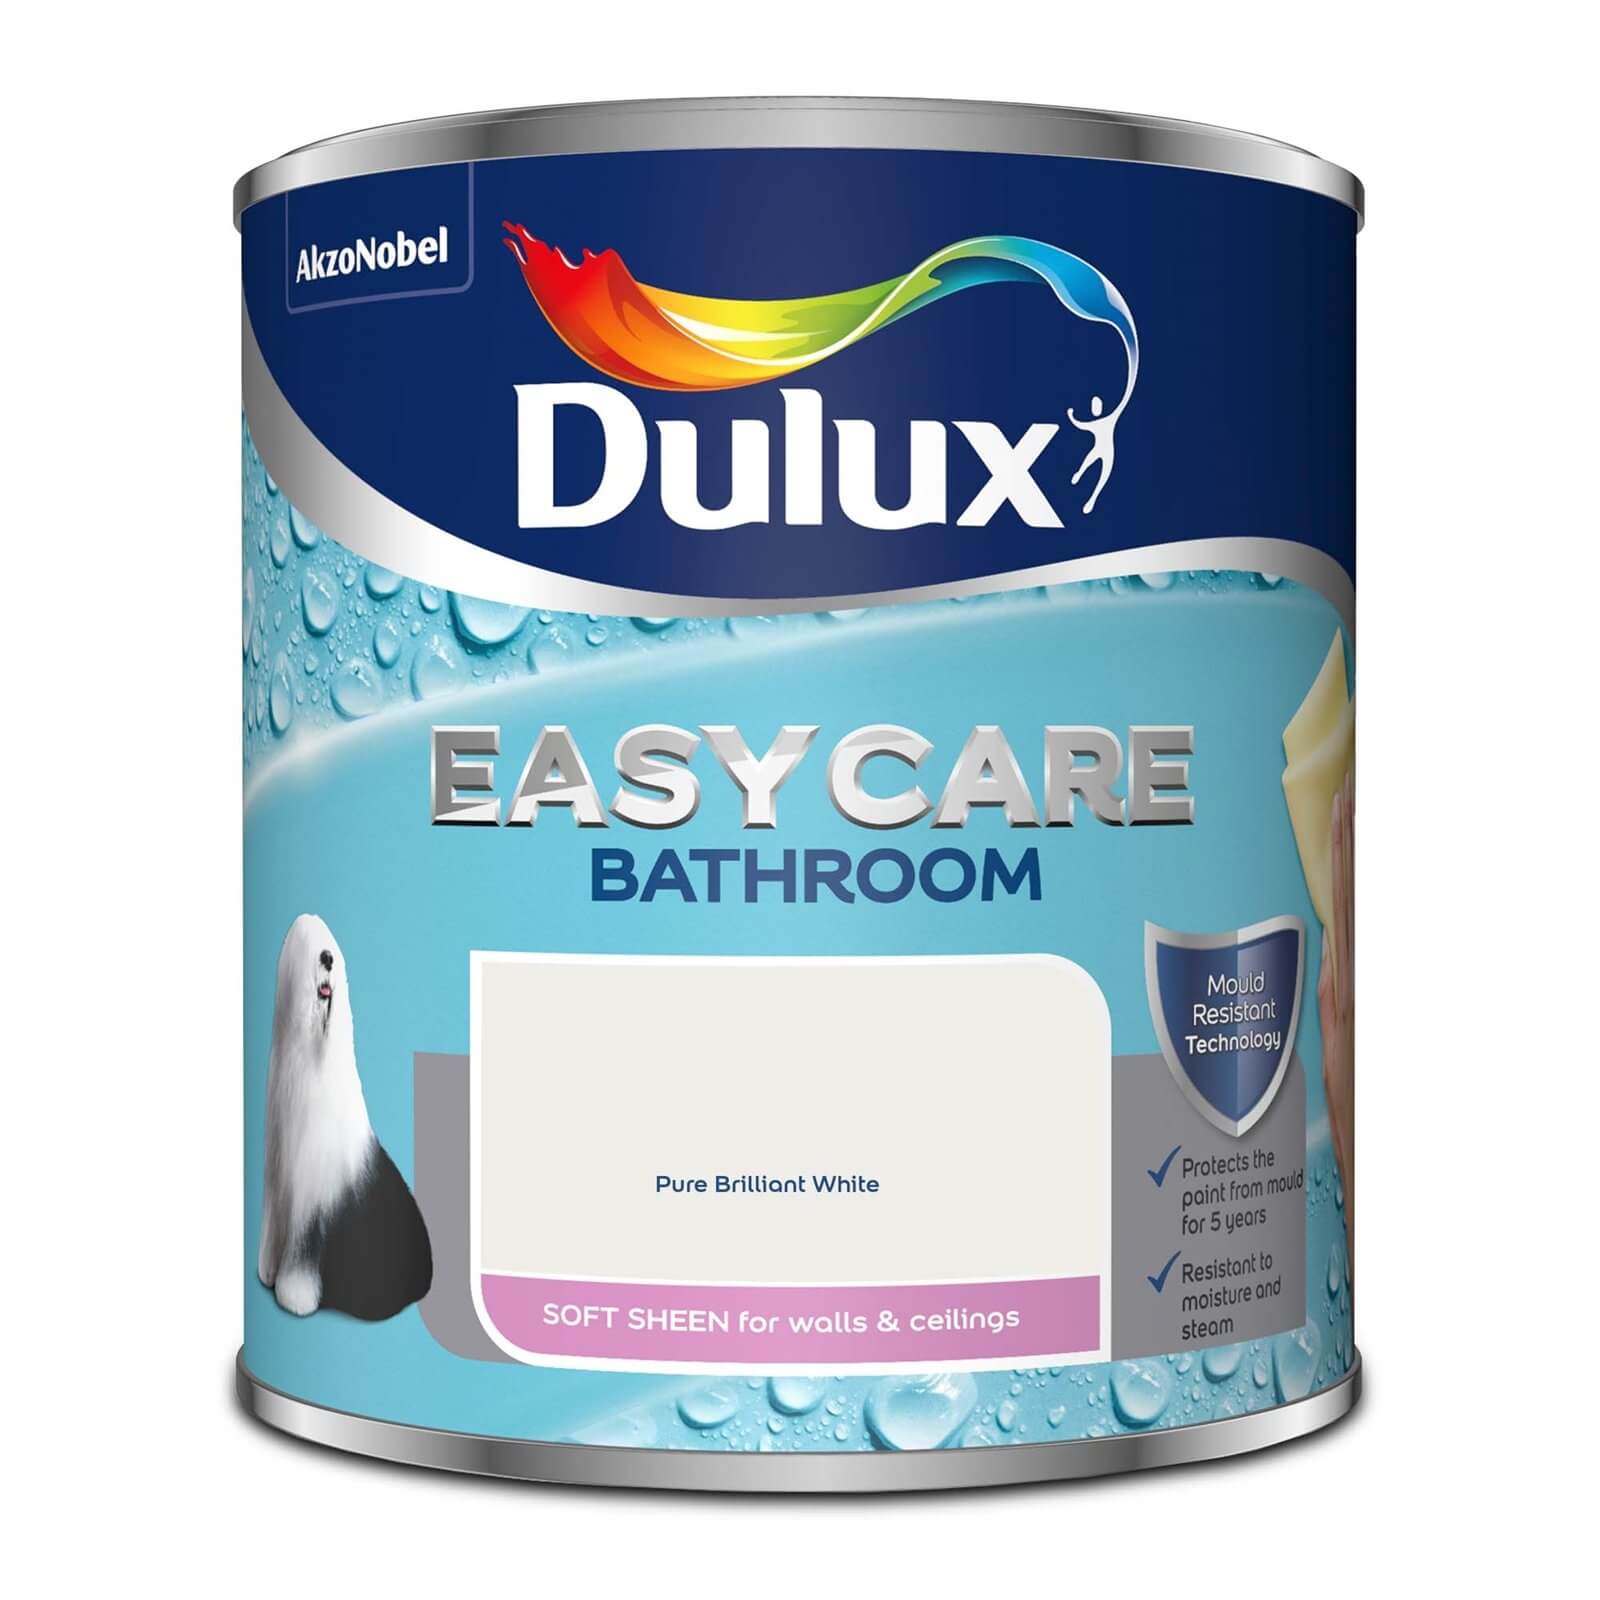 Dulux Easycare Bathroom Soft Sheen Paint Pure Brilliant White - 1L